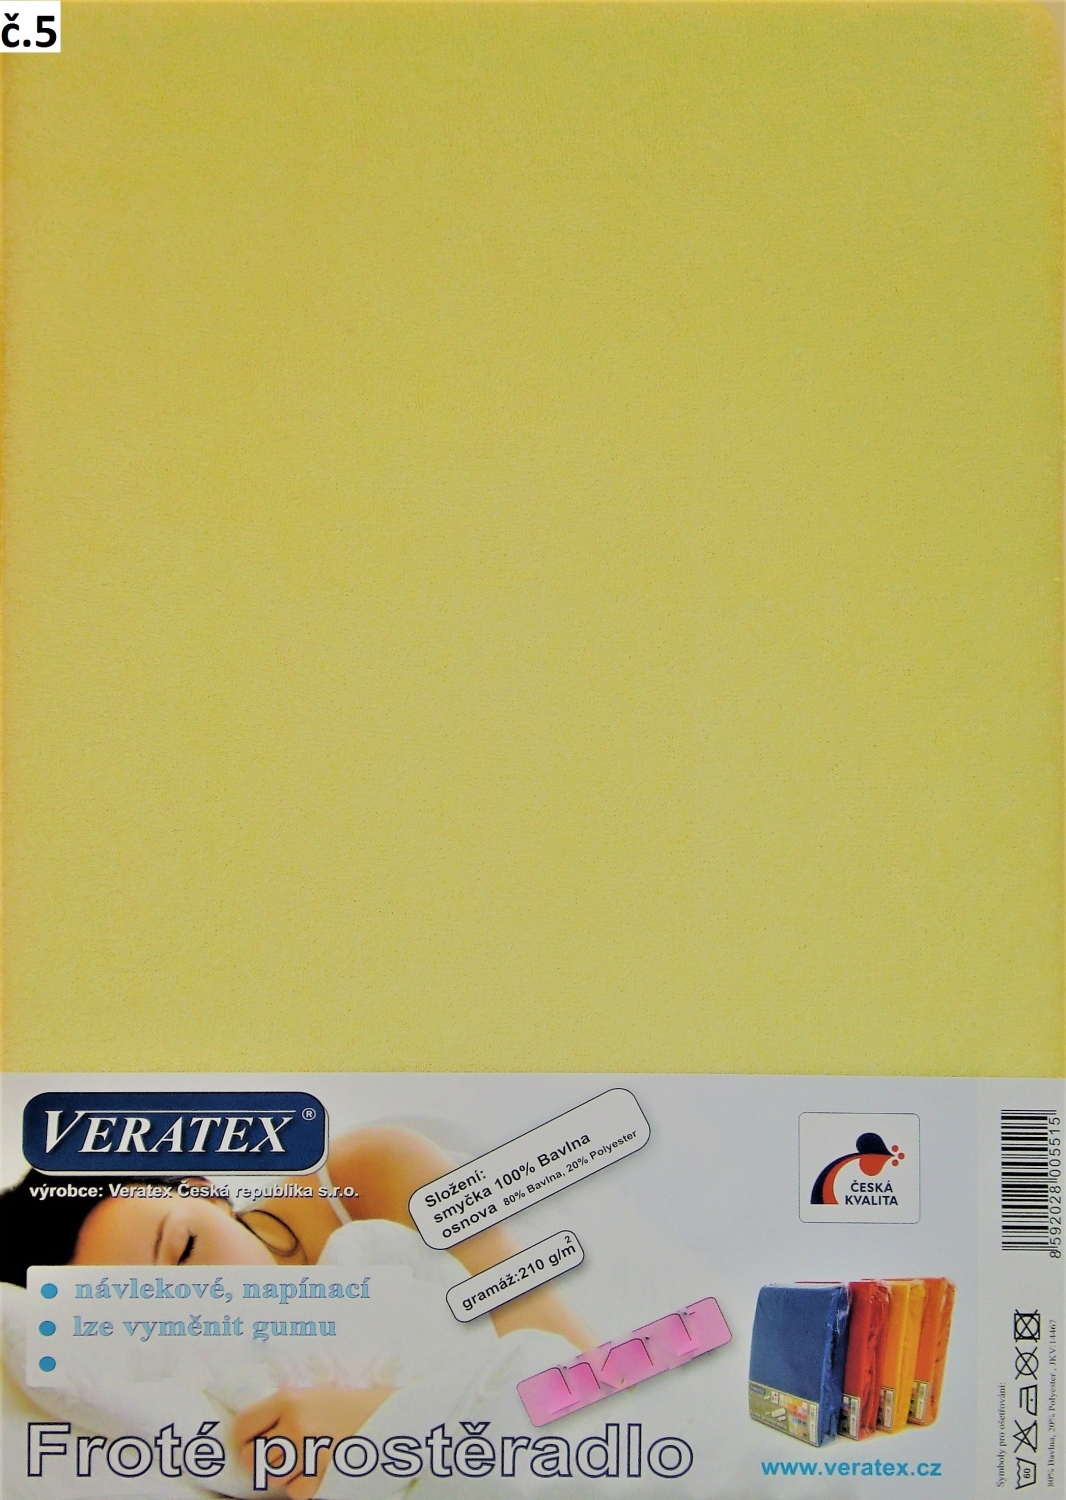 Veratex Froté prostěradlo 200x200 cm (č. 5-sv.žlutá)